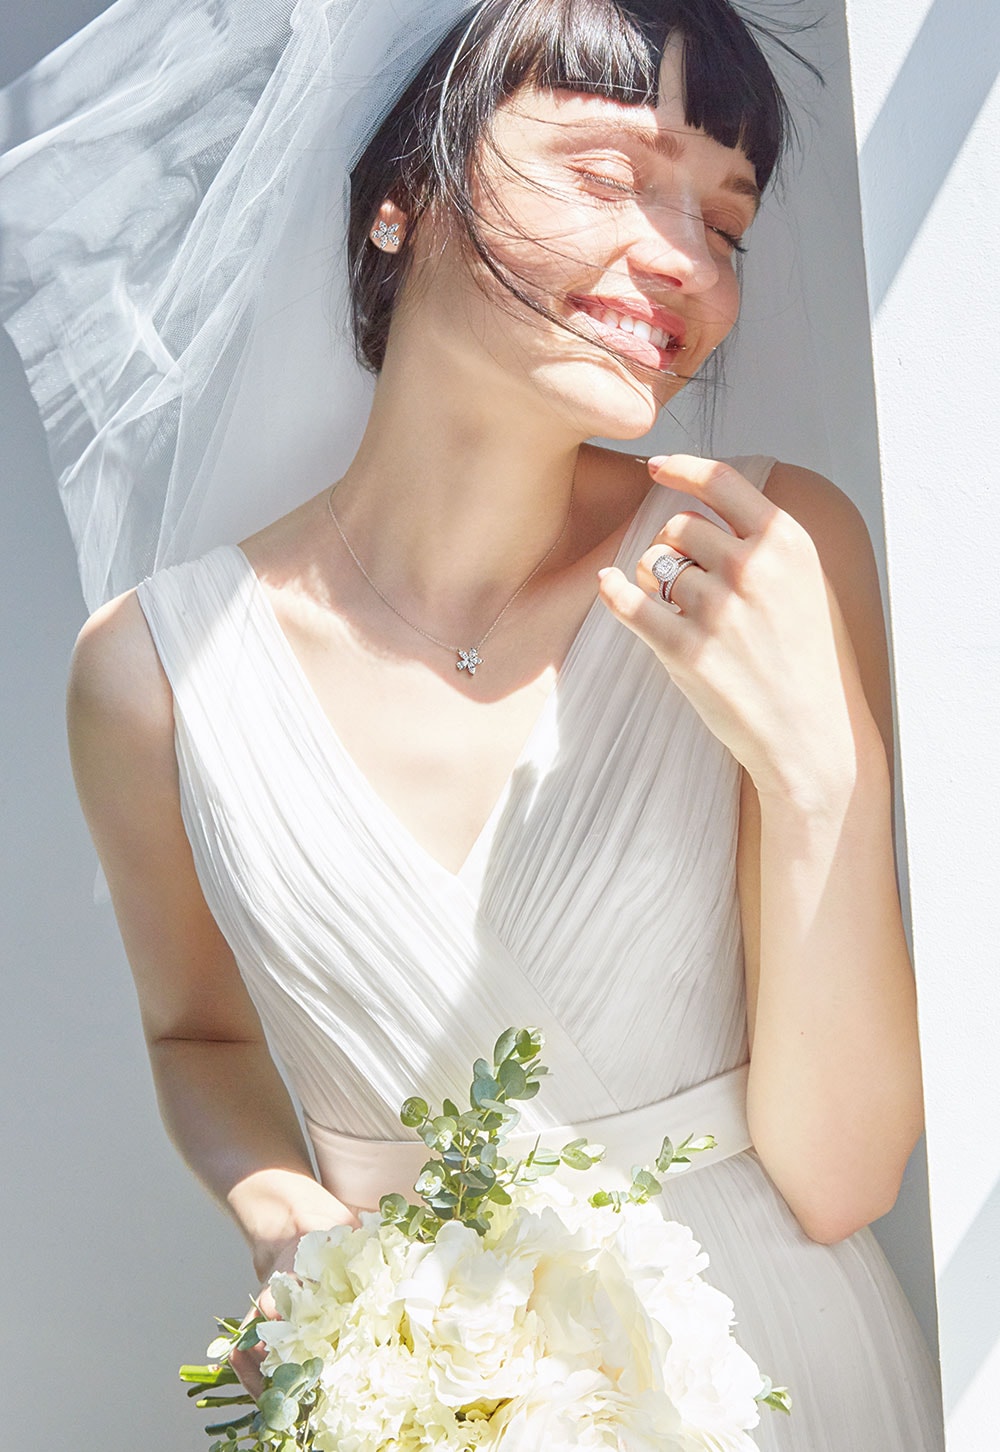 人気のソリテールリングといえば、「ティファニー ソレスト」。センターダイヤモンドの輝きを、取り巻くパヴェセットのダイヤモンドが際立たせてくれる。花モチーフのペンダントを合わせて優雅な花嫁スタイルが完成。